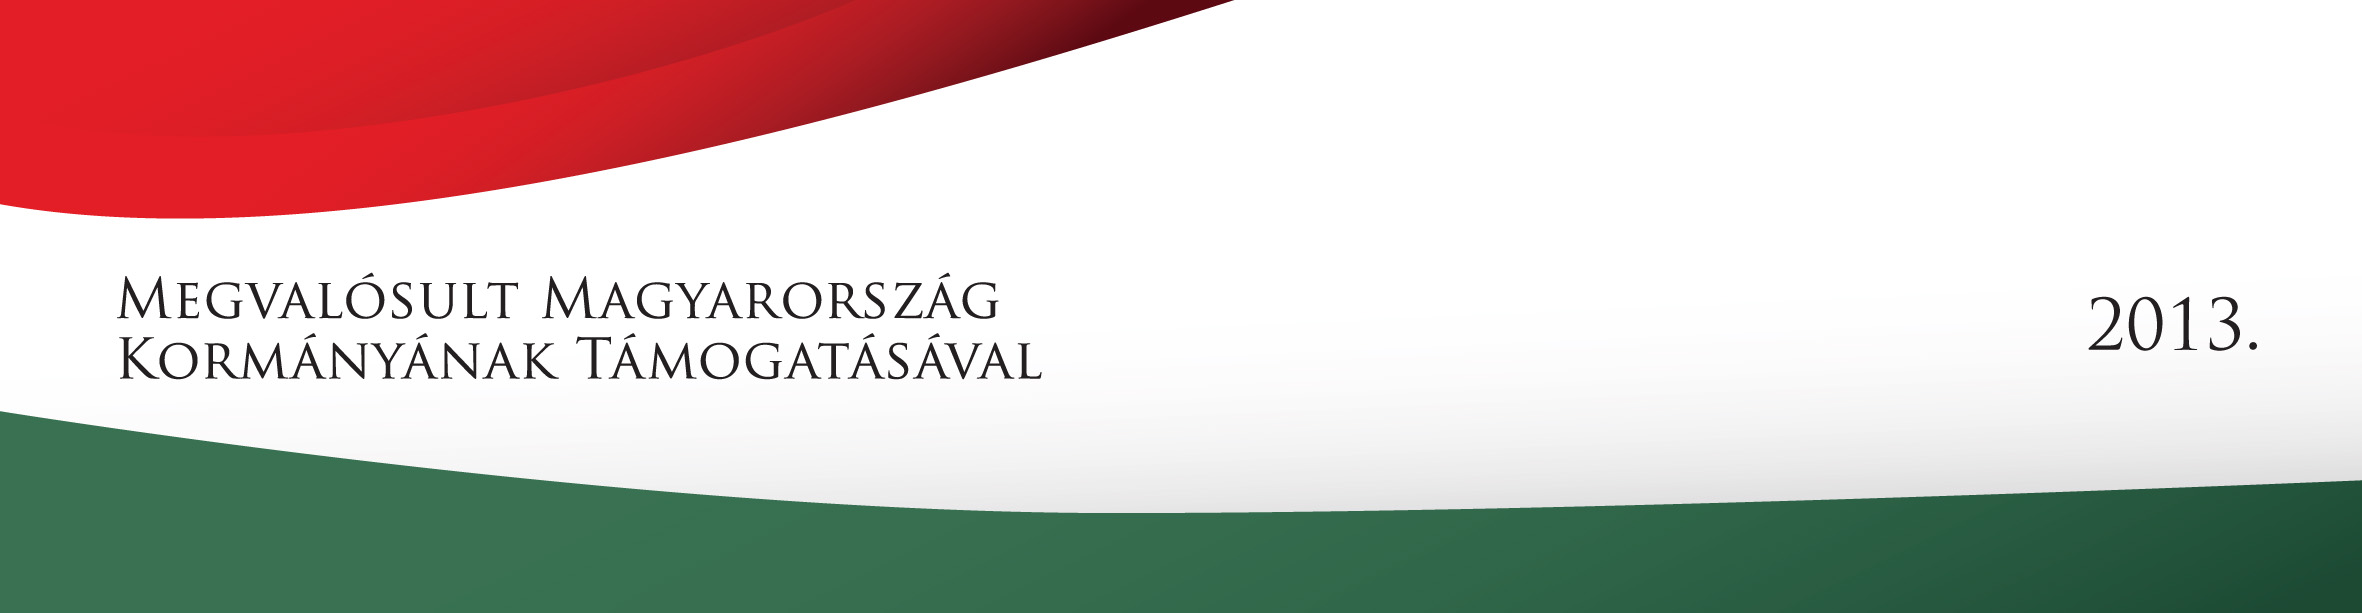 Megvalósult Magyarország Kormányának Támogatásával 2013 logó